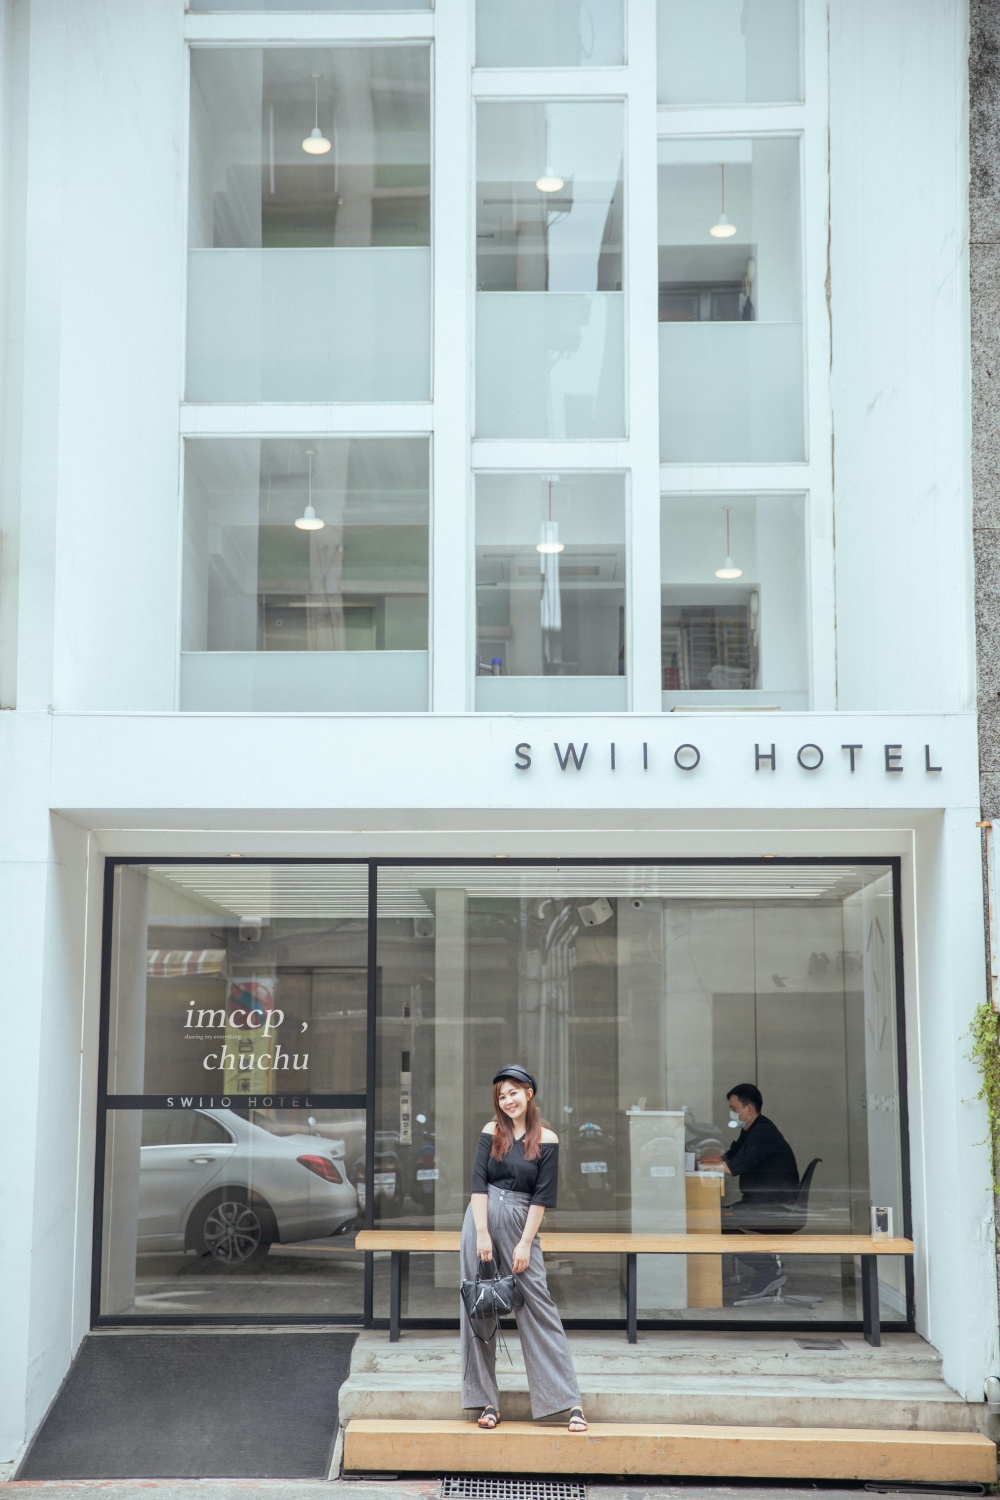 台北Swiio Hotel 二十輪旅店大安館。極簡純白平價設計旅店